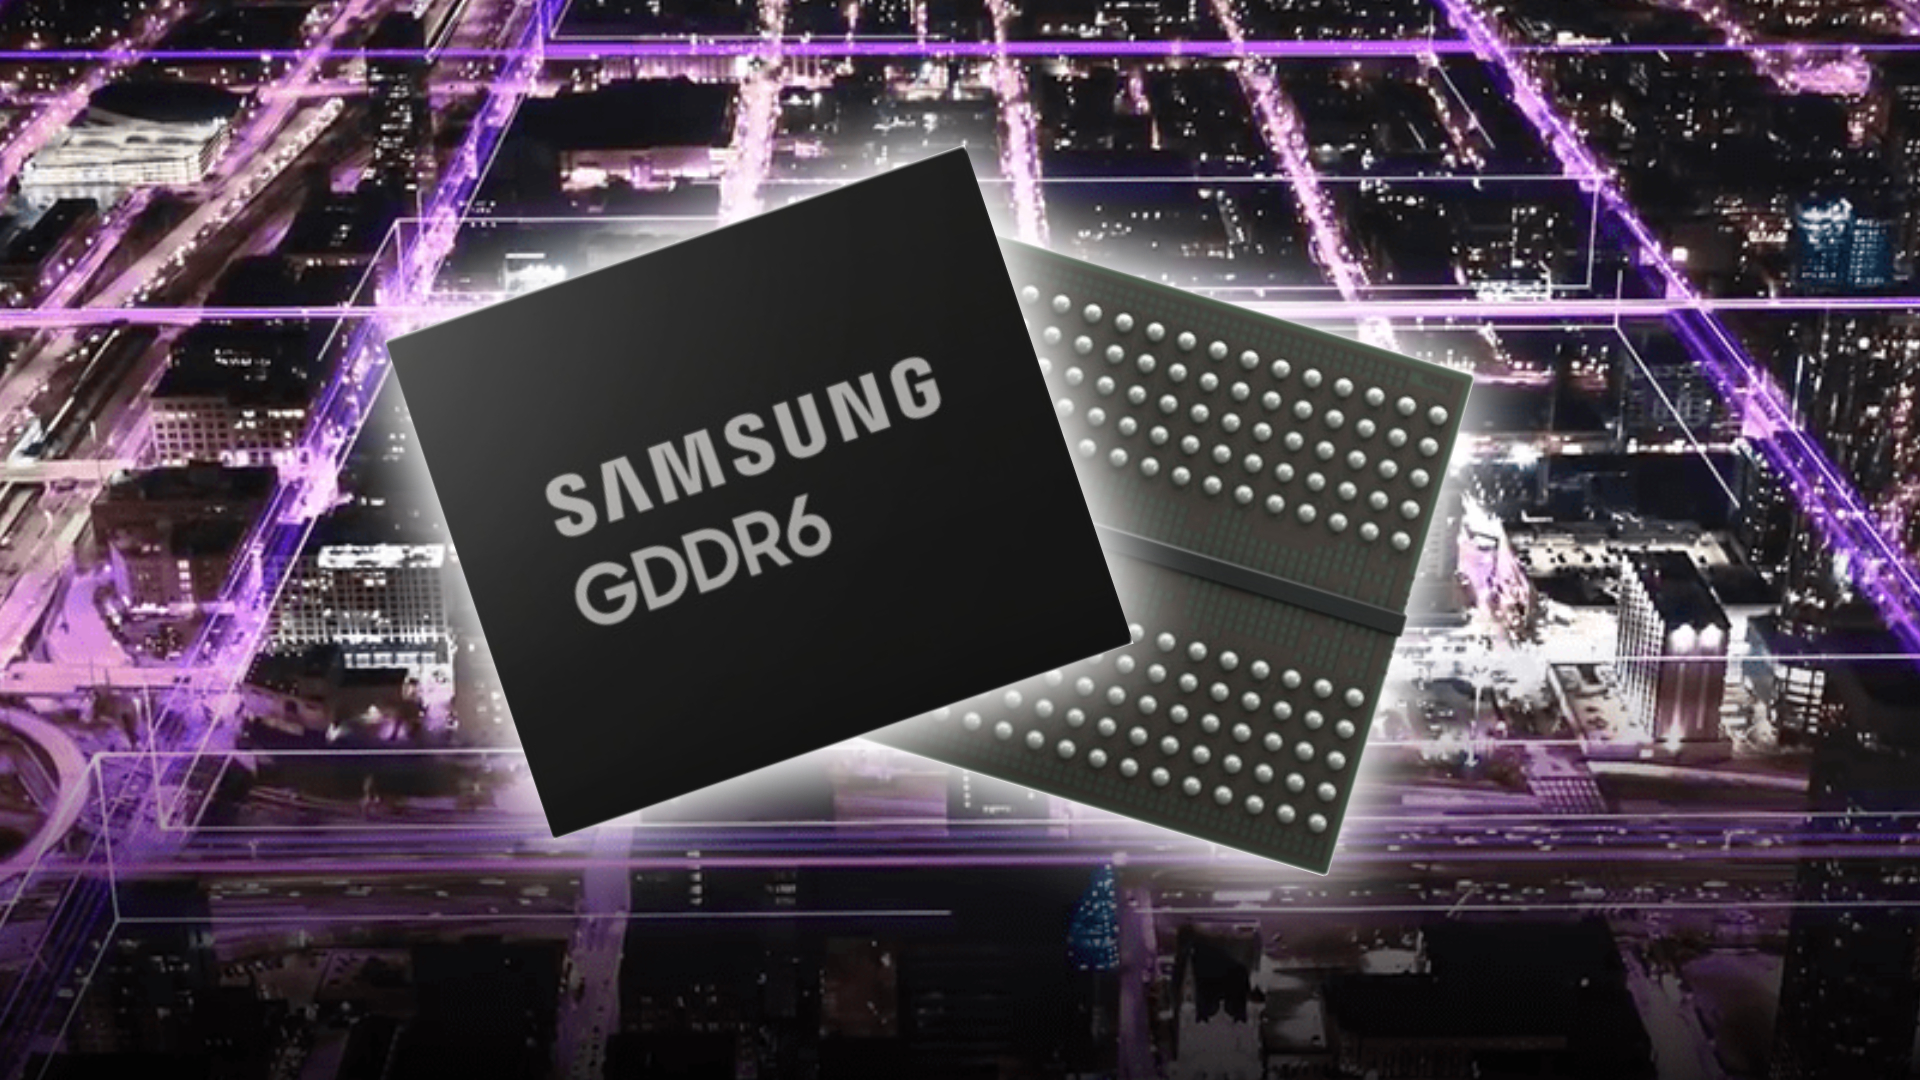 Samsung designs world's fastest GDDR6 memory for next-gen GPUs